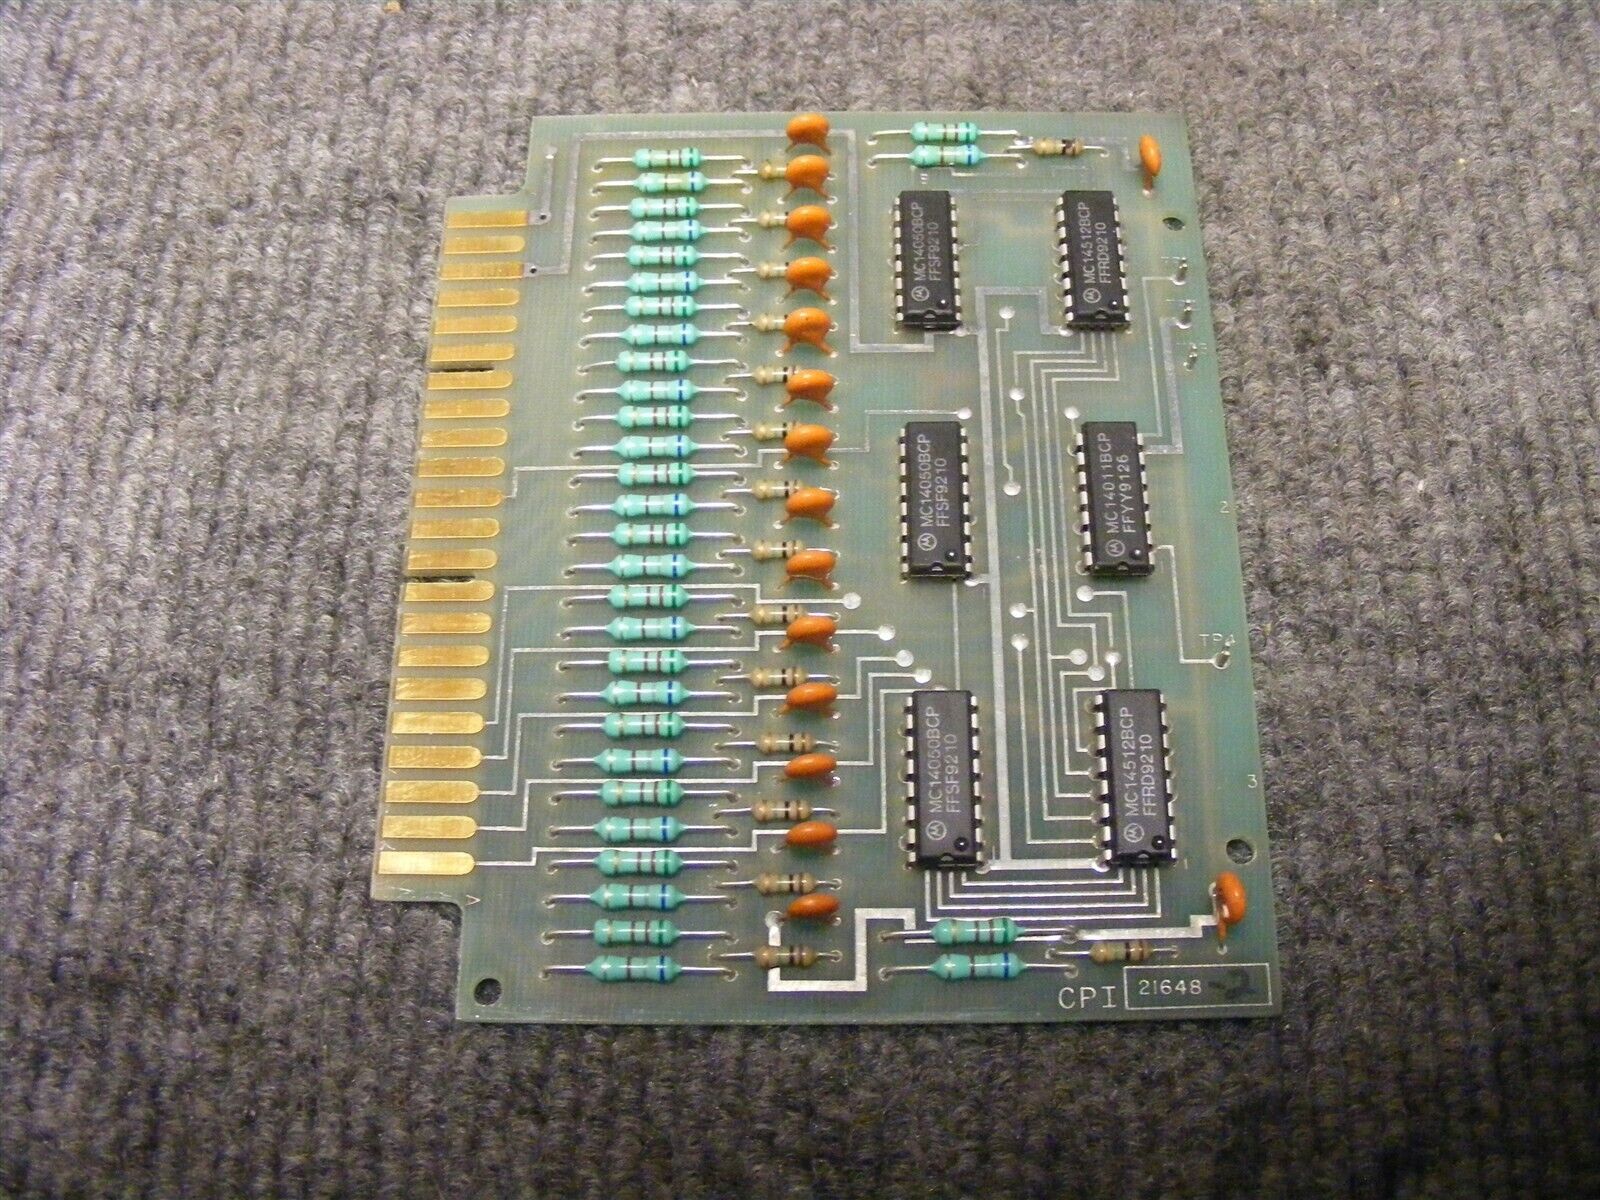 Van Dorn SCI CPI Central Processor Input Card Cat. No. 21648